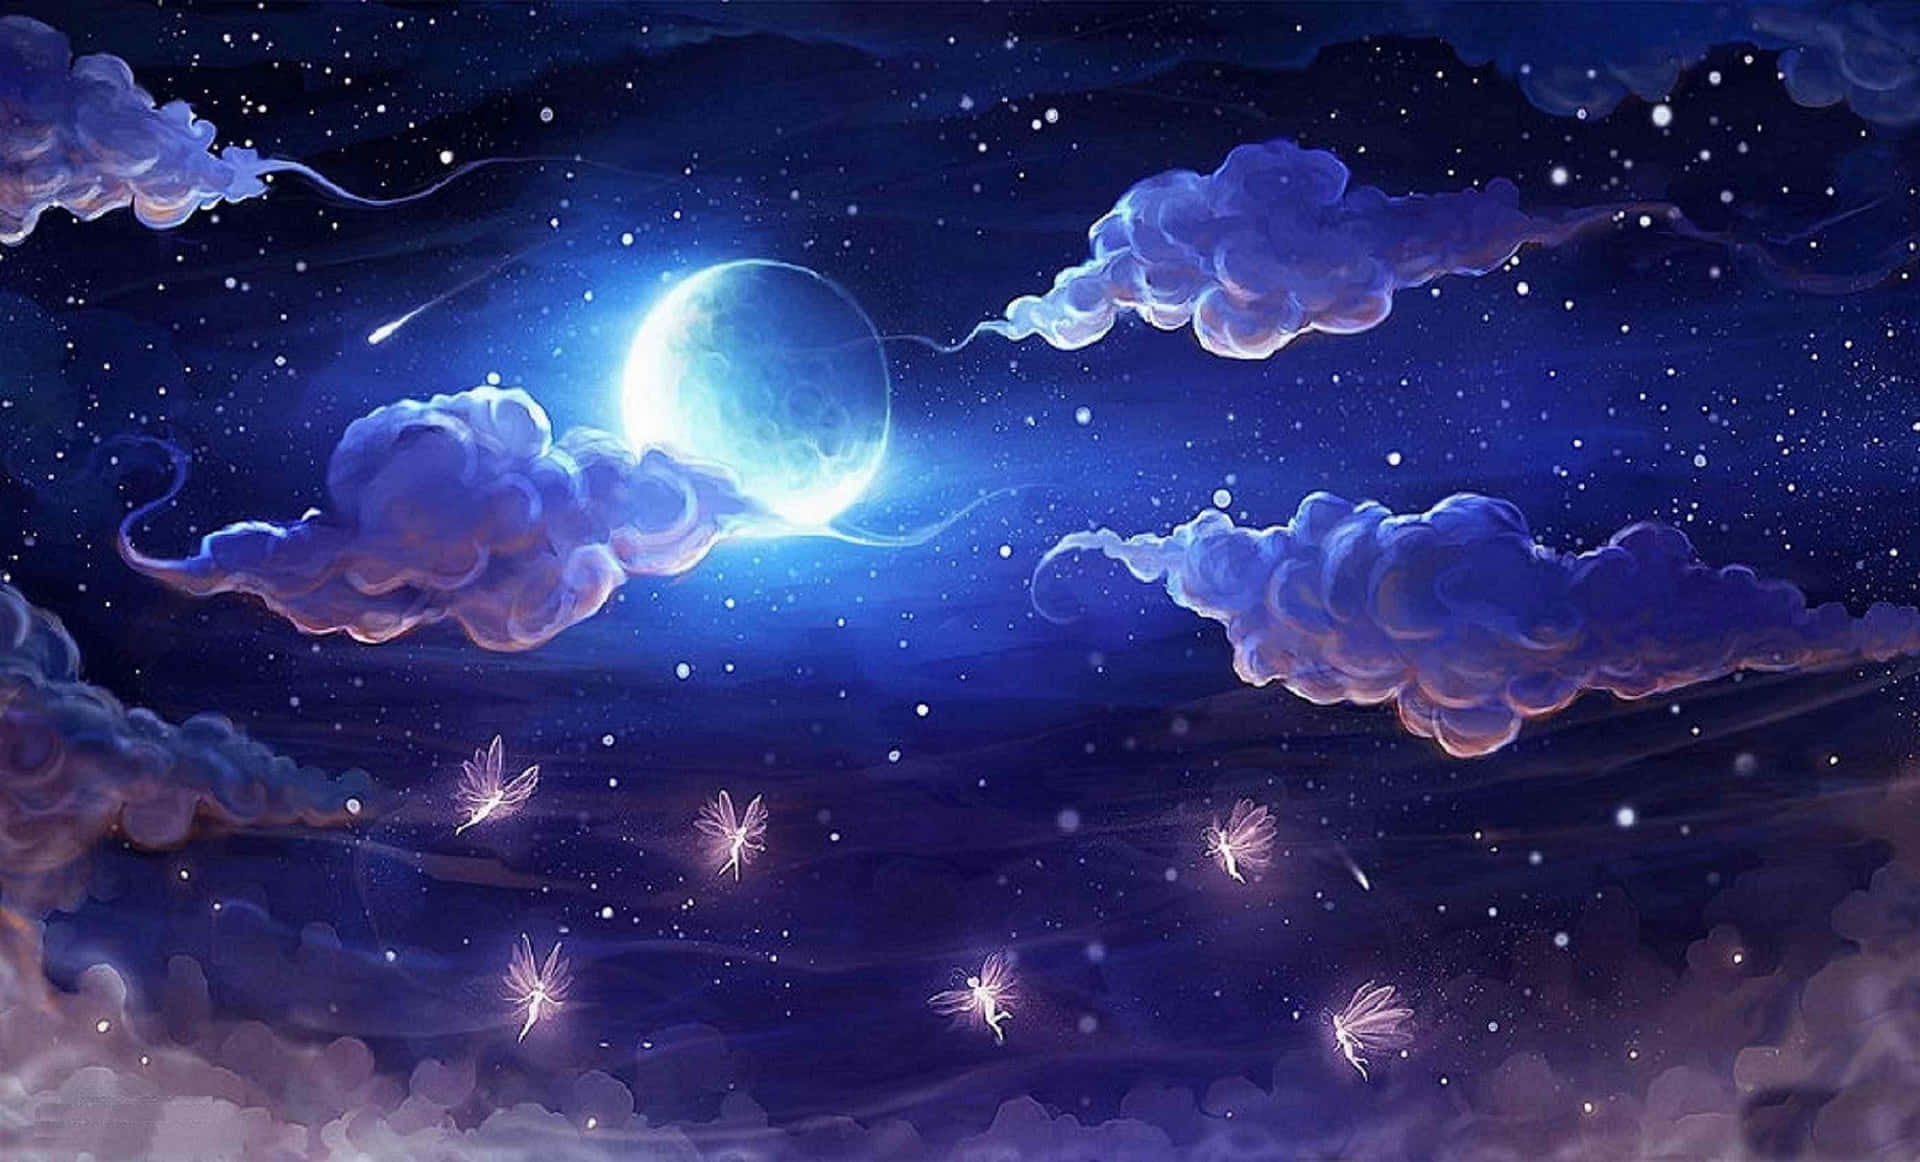 Imagende Cartoon De Noche Con La Luna En El Cielo